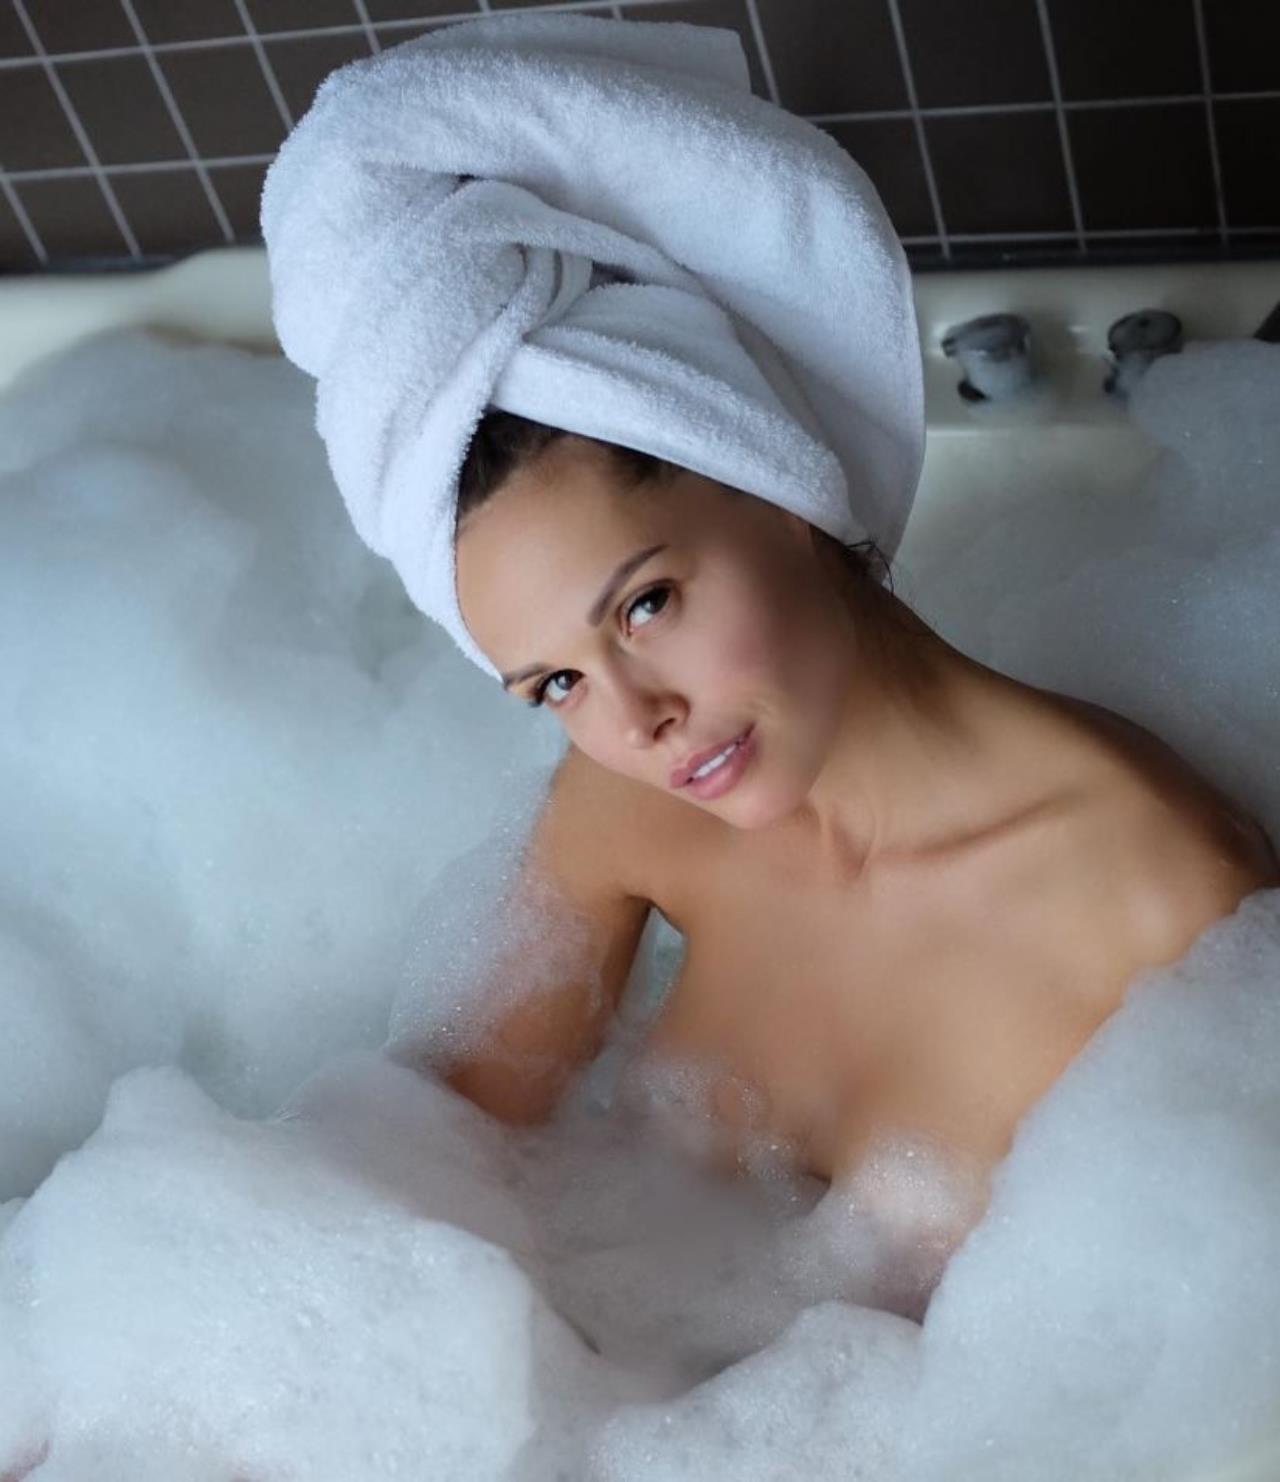 Молодая девушка в ванной вытерла себя полотенцем